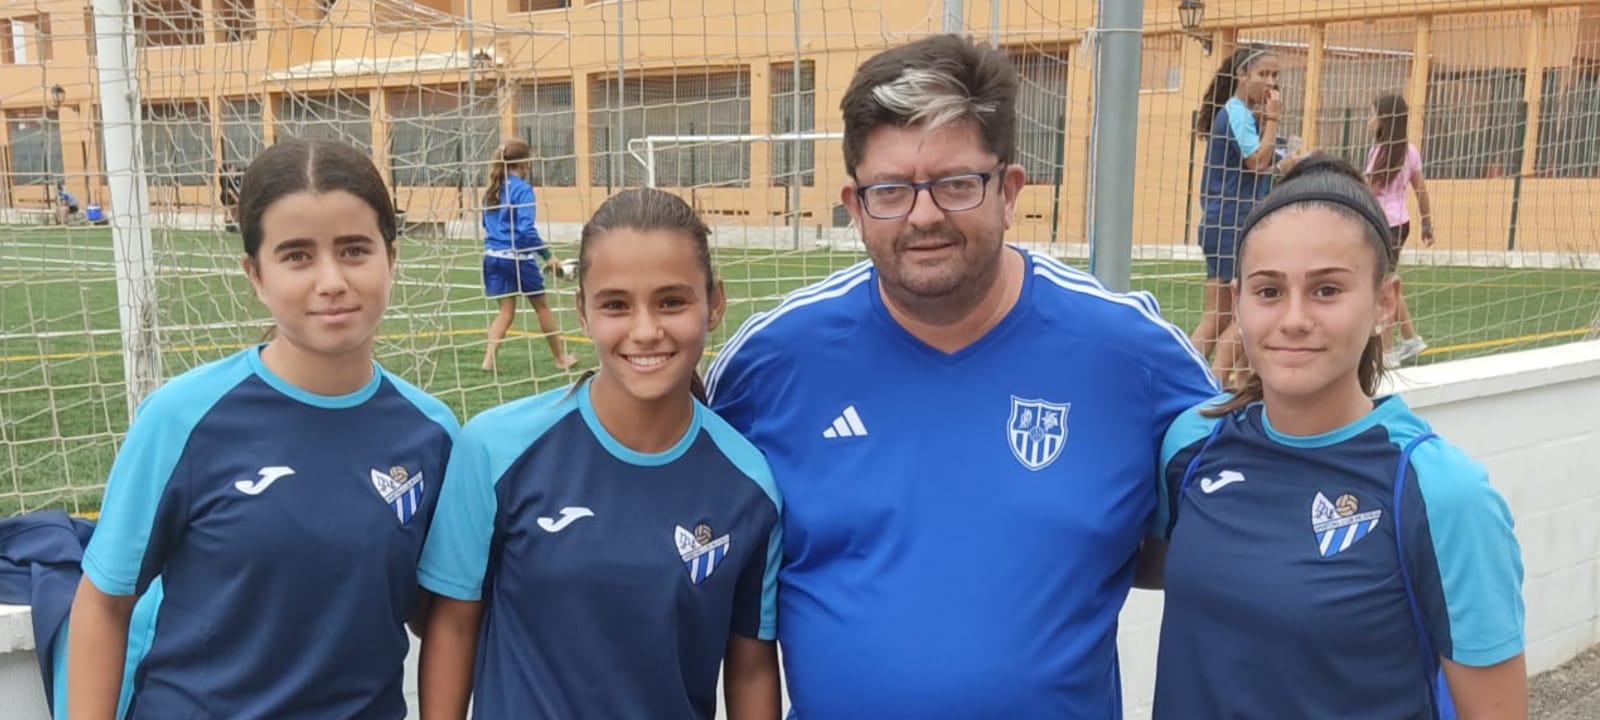 Marina, Rocío y Mónica jugarán en el Sporting Club de Huelva